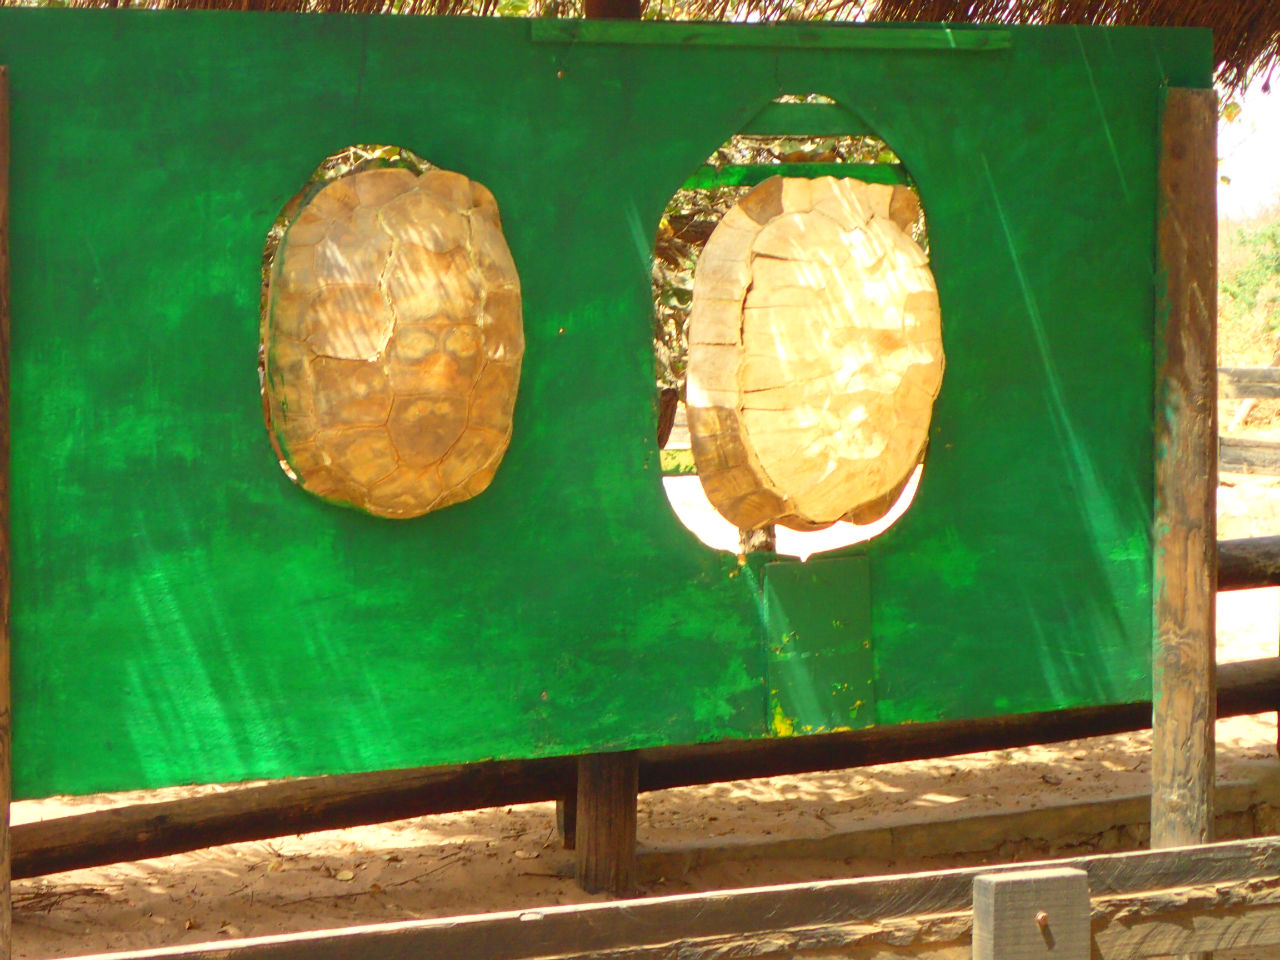 Огромные черепахи Африки Бамбилор, Сенегал